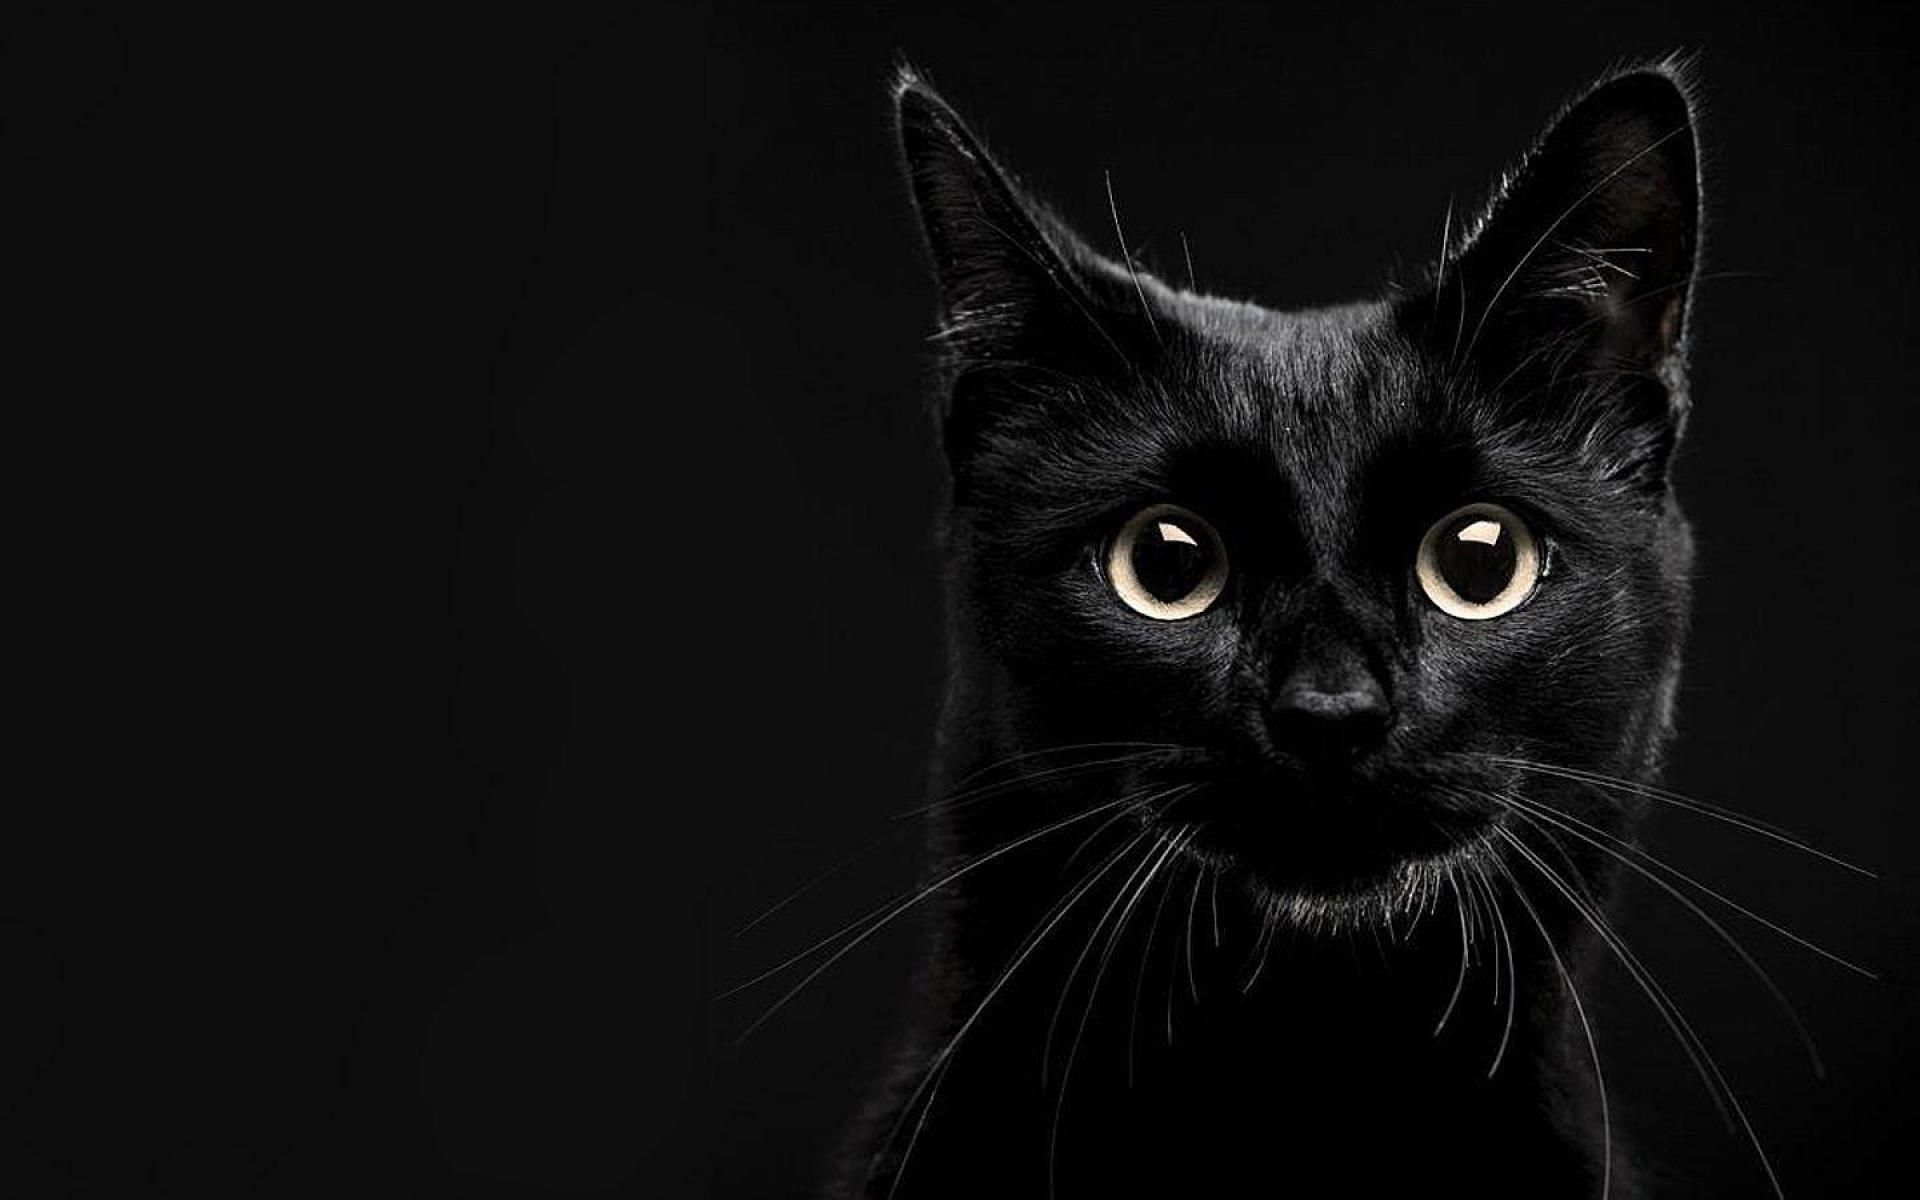 Black Cat PC Wallpapers: Mèo đen là một trong những biểu tượng đặc trưng của Halloween, và cũng là một đề tài phổ biến trong nghệ thuật. Hãy xem một số hình nền Black Cat PC để tìm kiếm một sự kết hợp của sự kỳ lạ và quyến rũ.